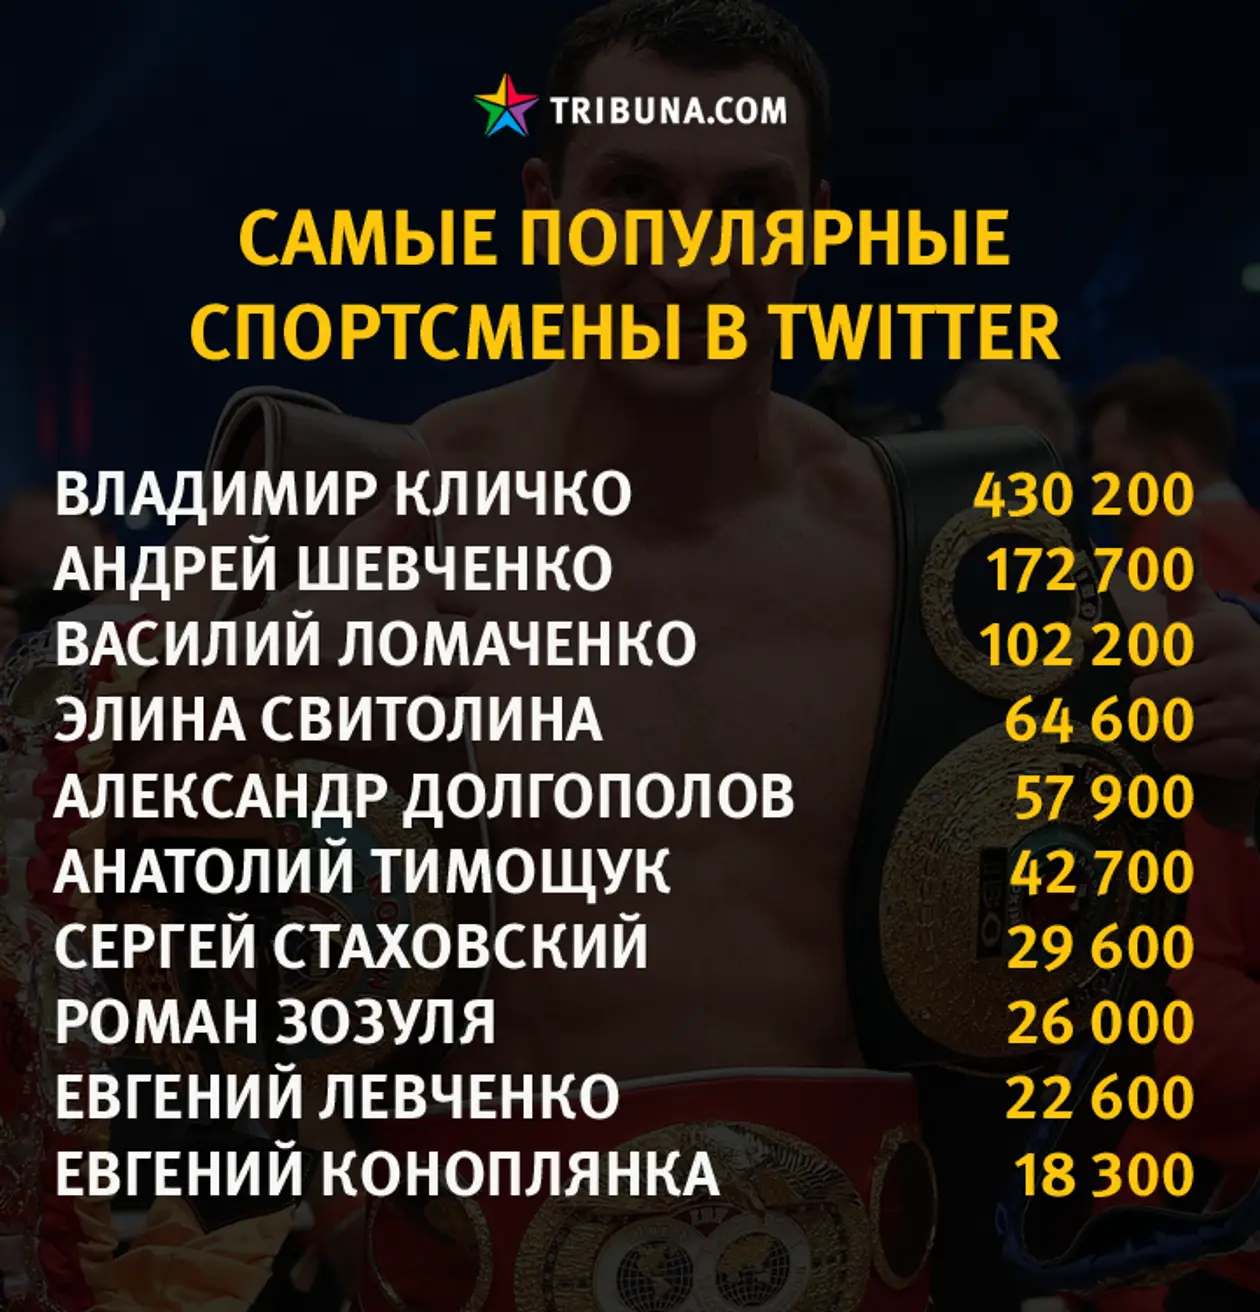 Самые популярные украинские спортсмены в соцсетях